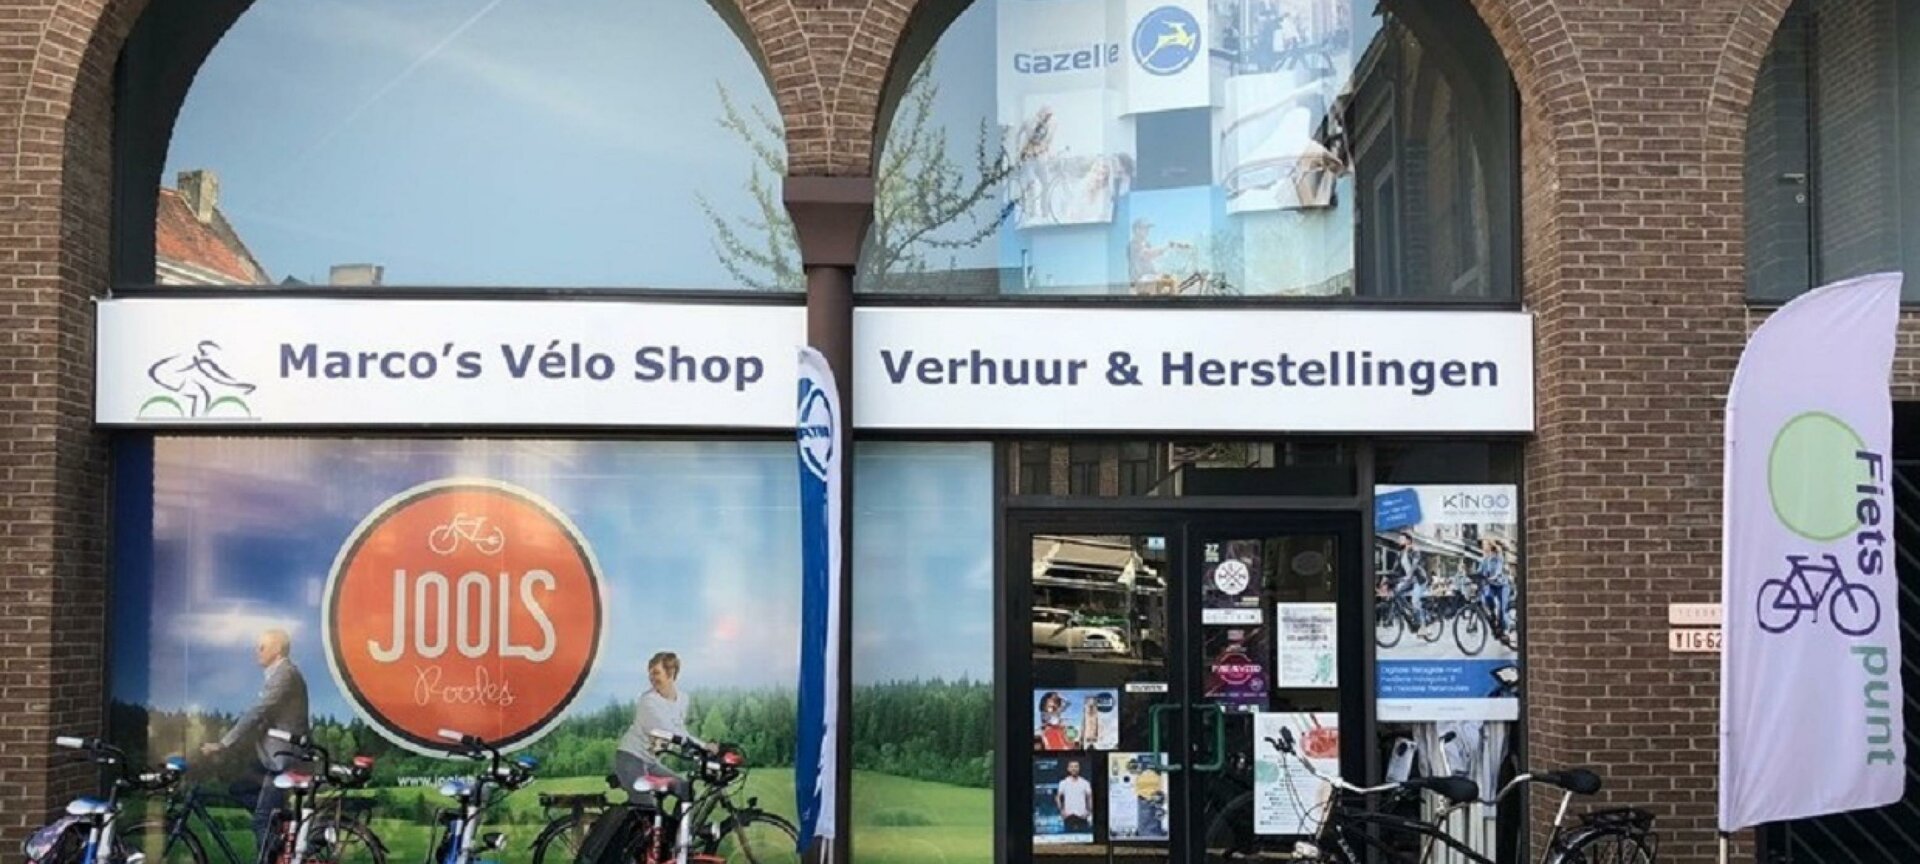 Marco's Vélo Shop - Marco's Vélo Shop